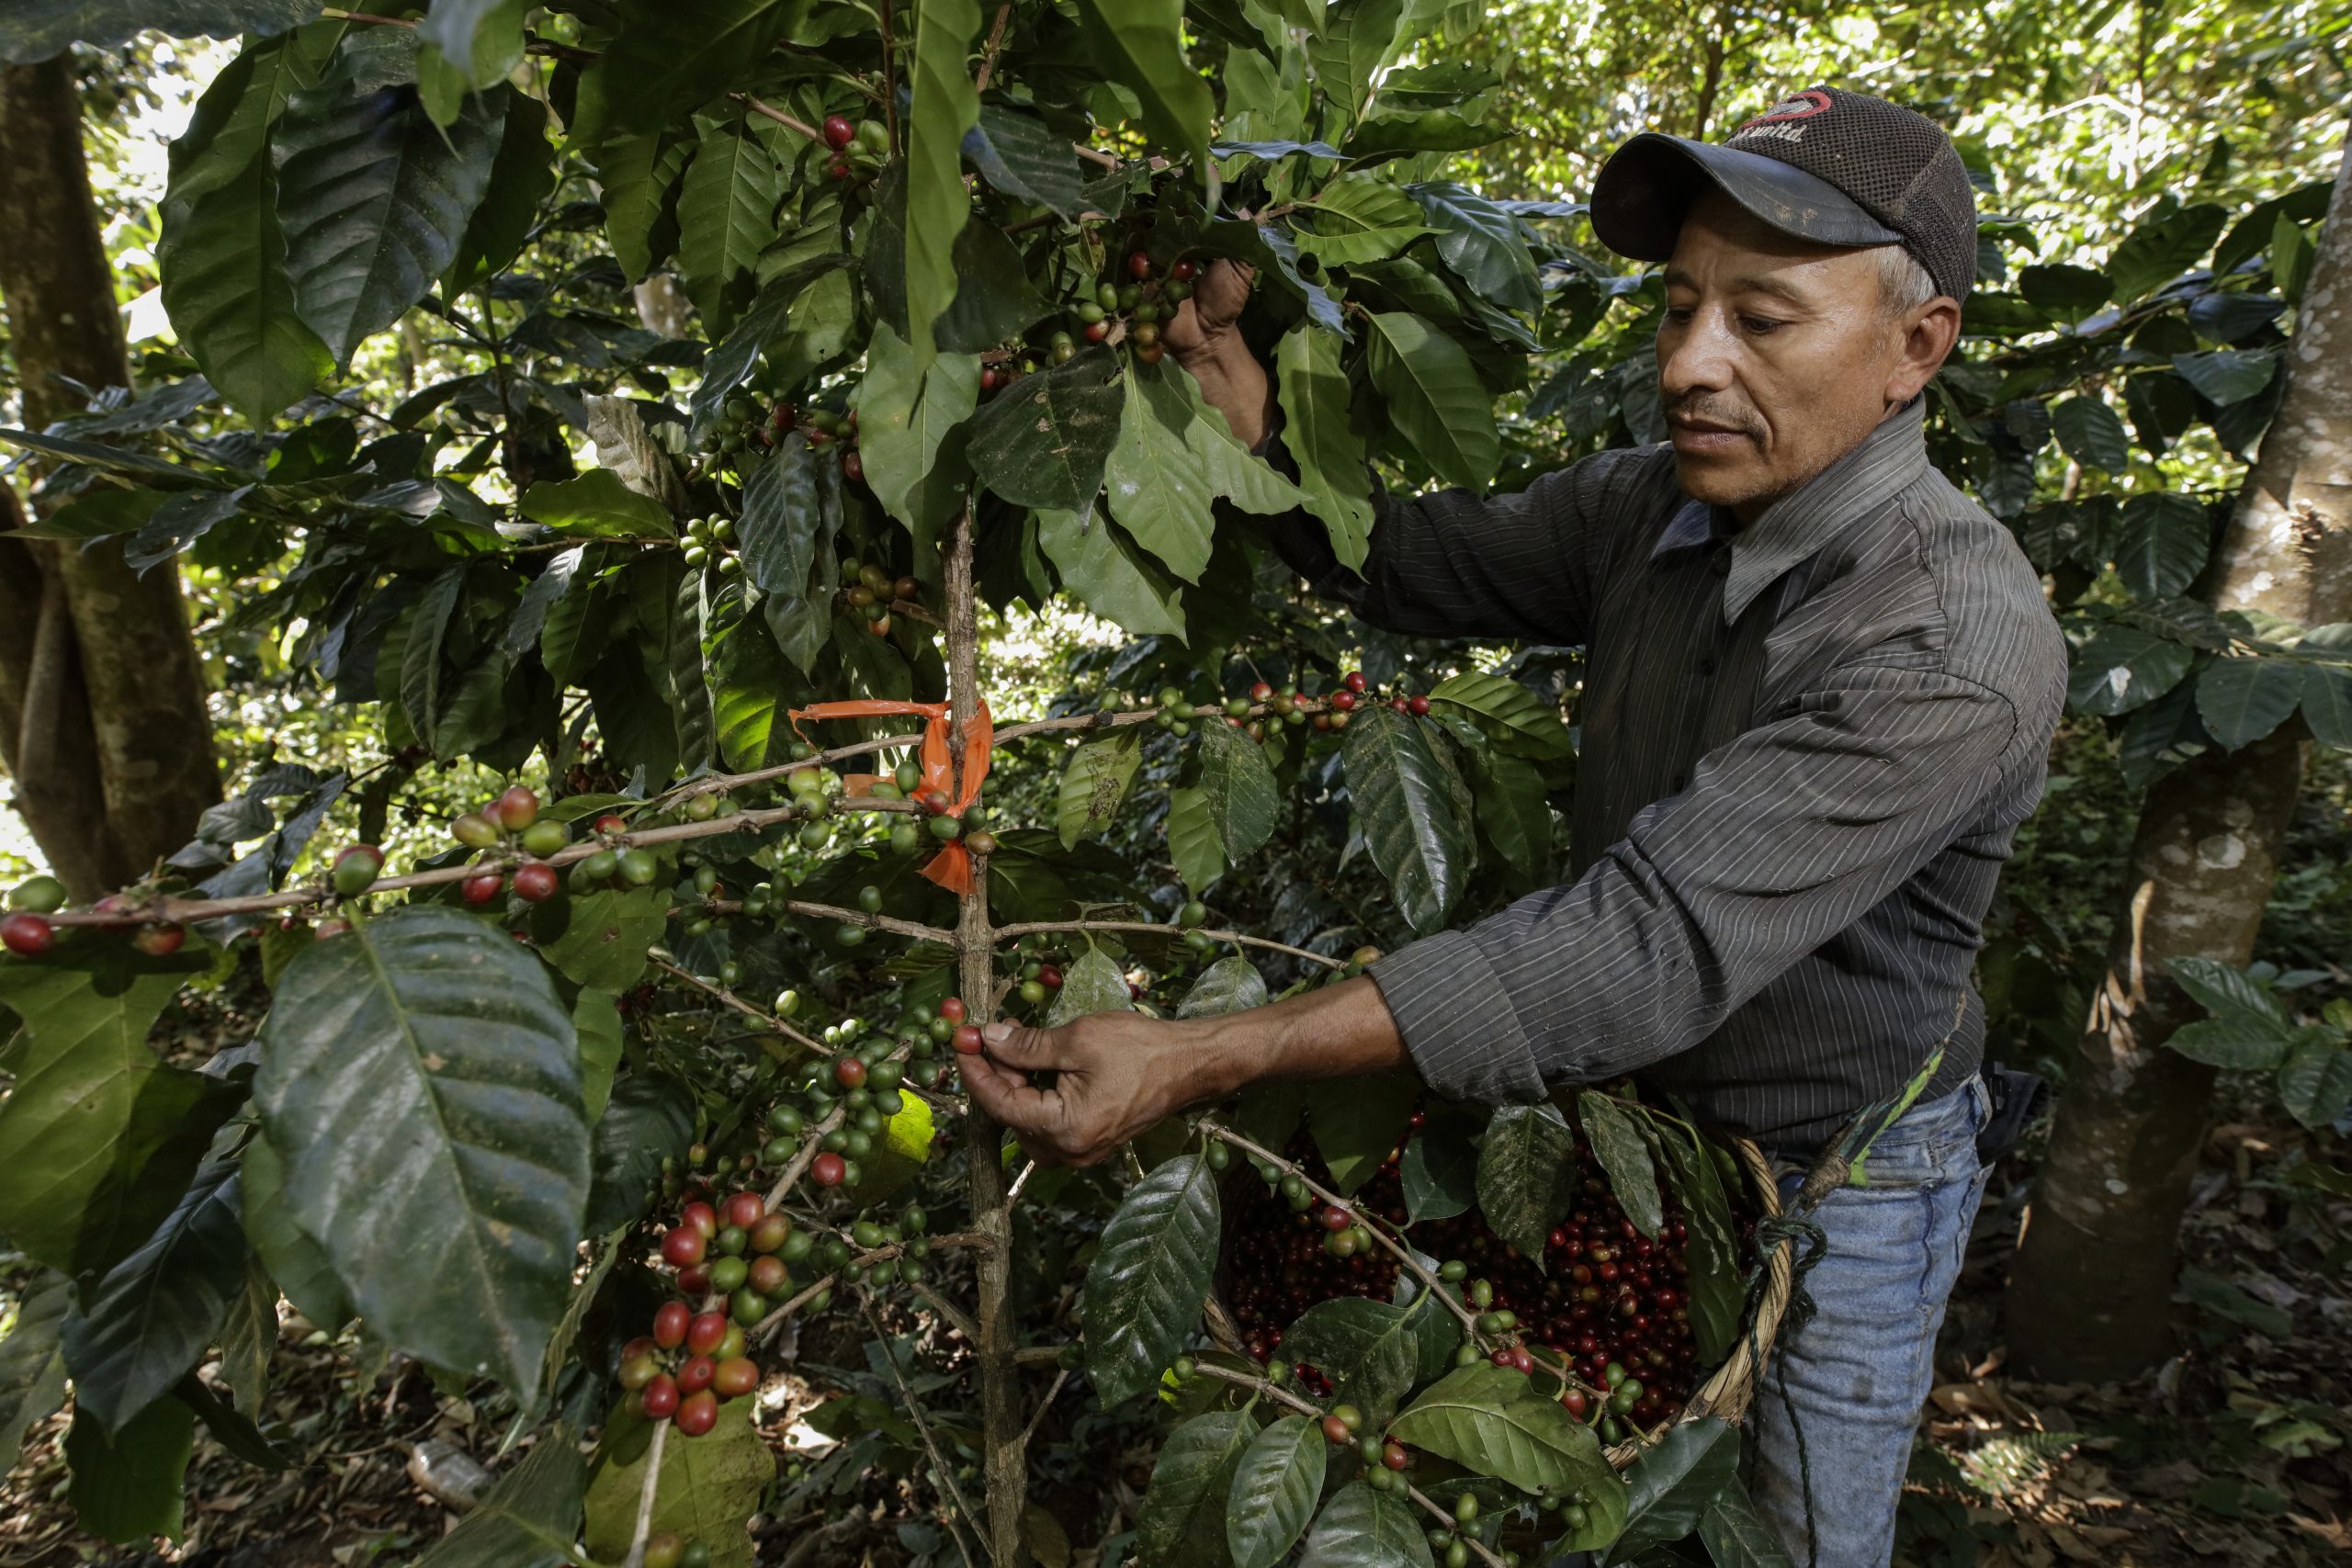 <p>Un agricultor cafetero en su finca en el cantón La Concepción, San Pedro Puxtla, Ahuachapán, El Salvador. La producción de café es una actividad importante para la economía salvadoreña, pero los efectos del clima extremo, como sequías e inundaciones, la han afectado en los últimos años (Imagen: <a href="https://www.flickr.com/photos/27781737@N05/40523677681/">Maren Barbee</a>, <a href="https://creativecommons.org/licenses/by/2.0/">CC BY</a>)</p>